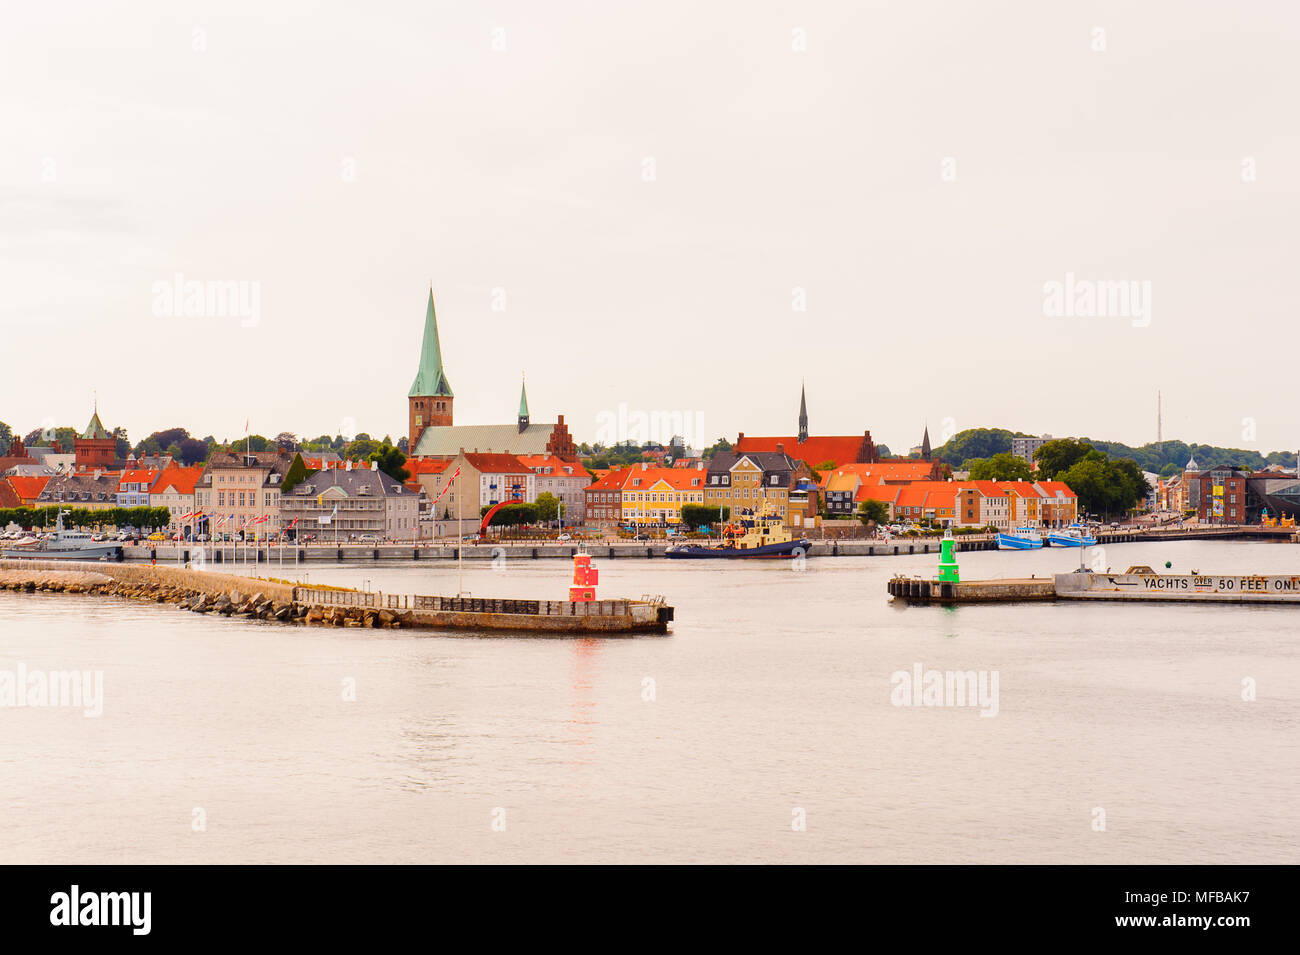 Panorama of Helsingor, Denmark Stock Photo